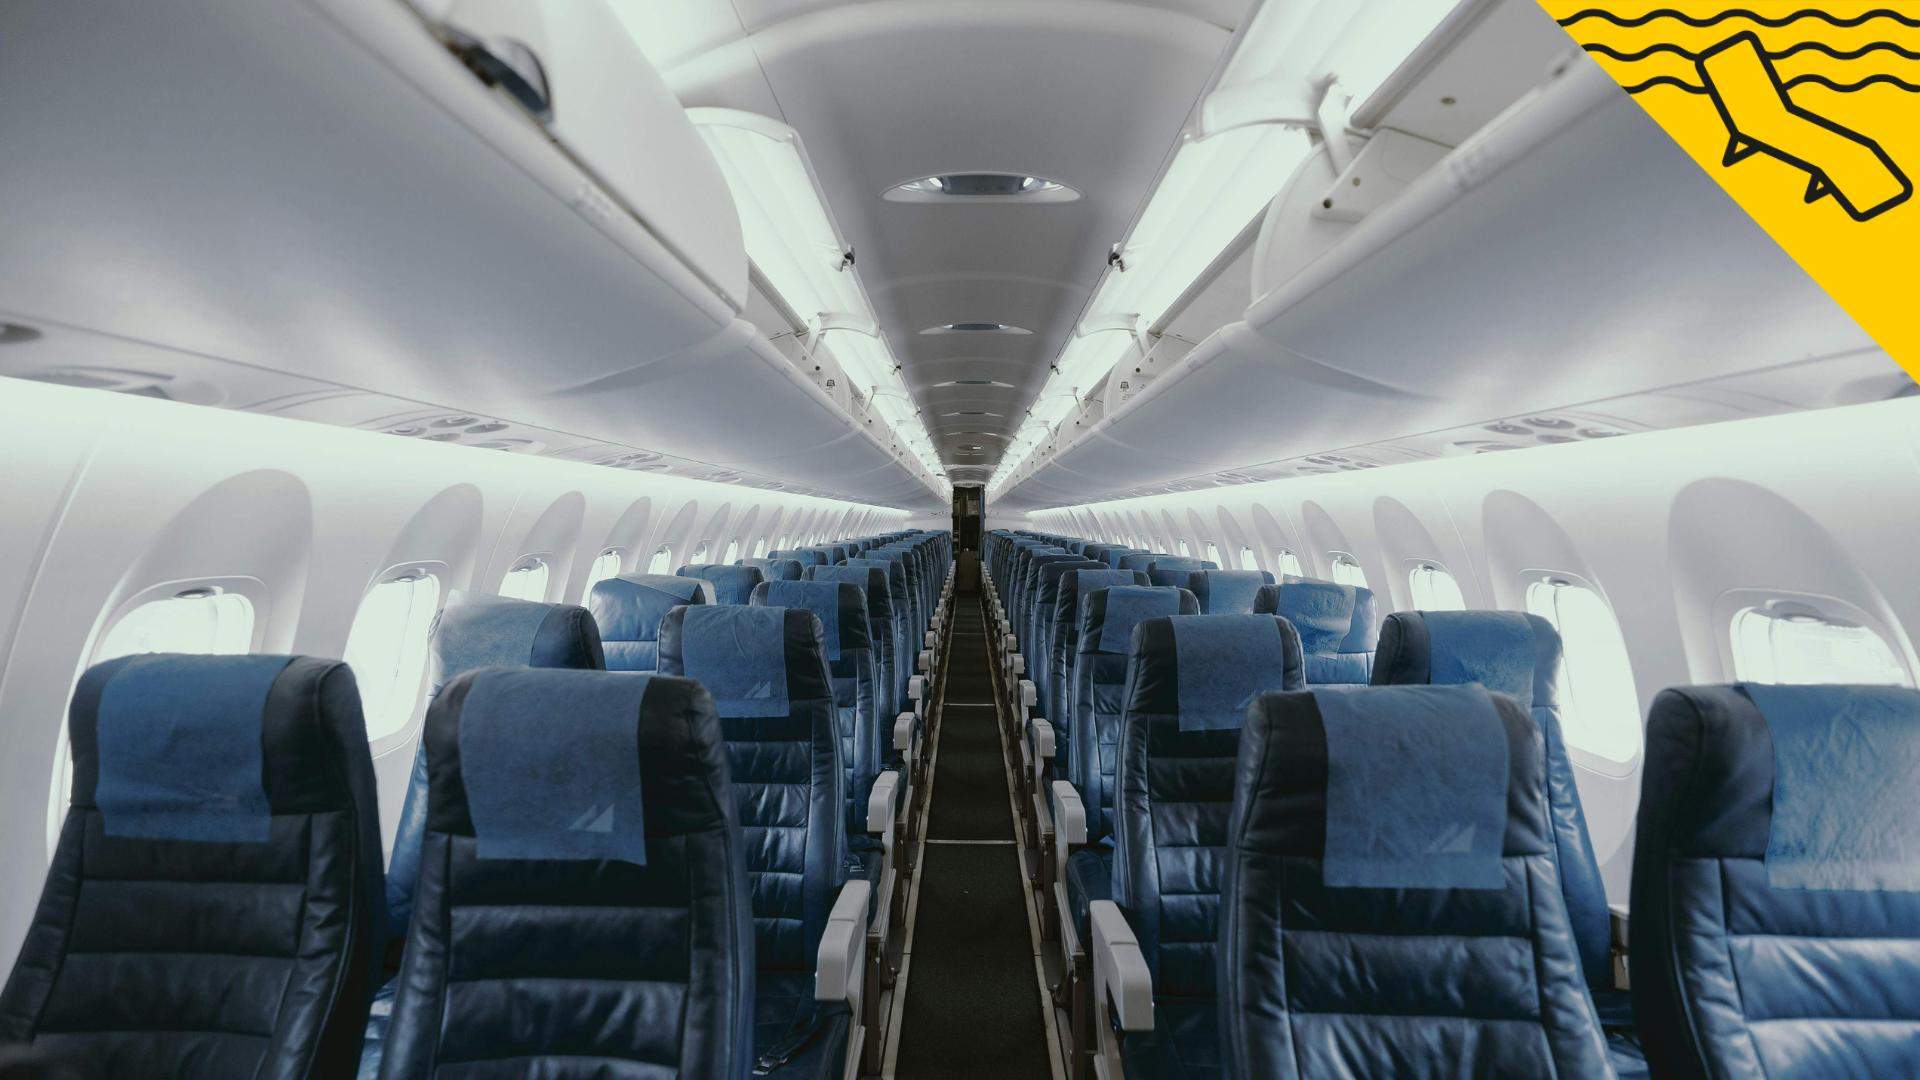 El truco definitivo para conseguir un buen asiento en el avión sin pagar extra